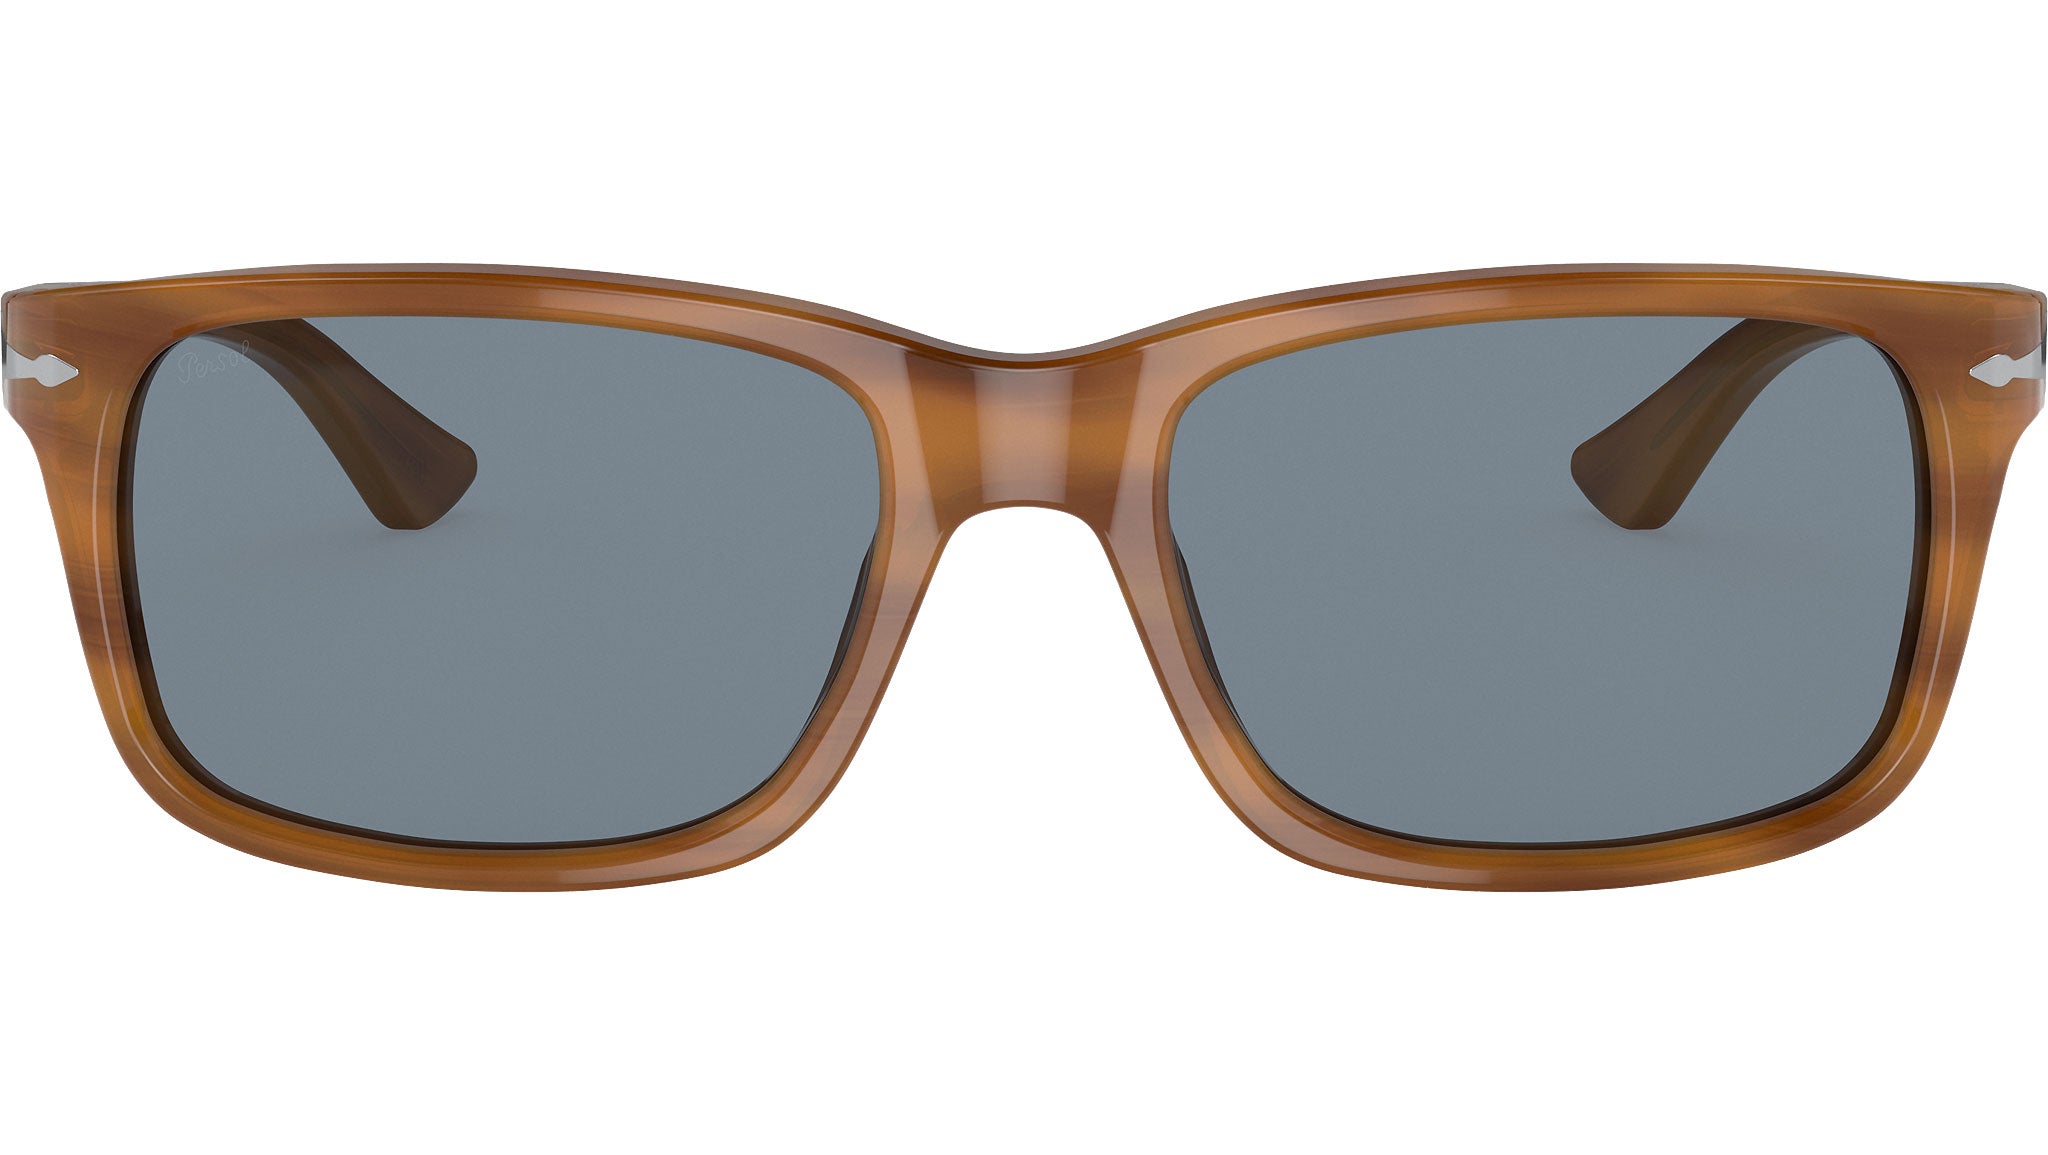 Persol Sunglasses PO3048S Striped Brown Blue Lens